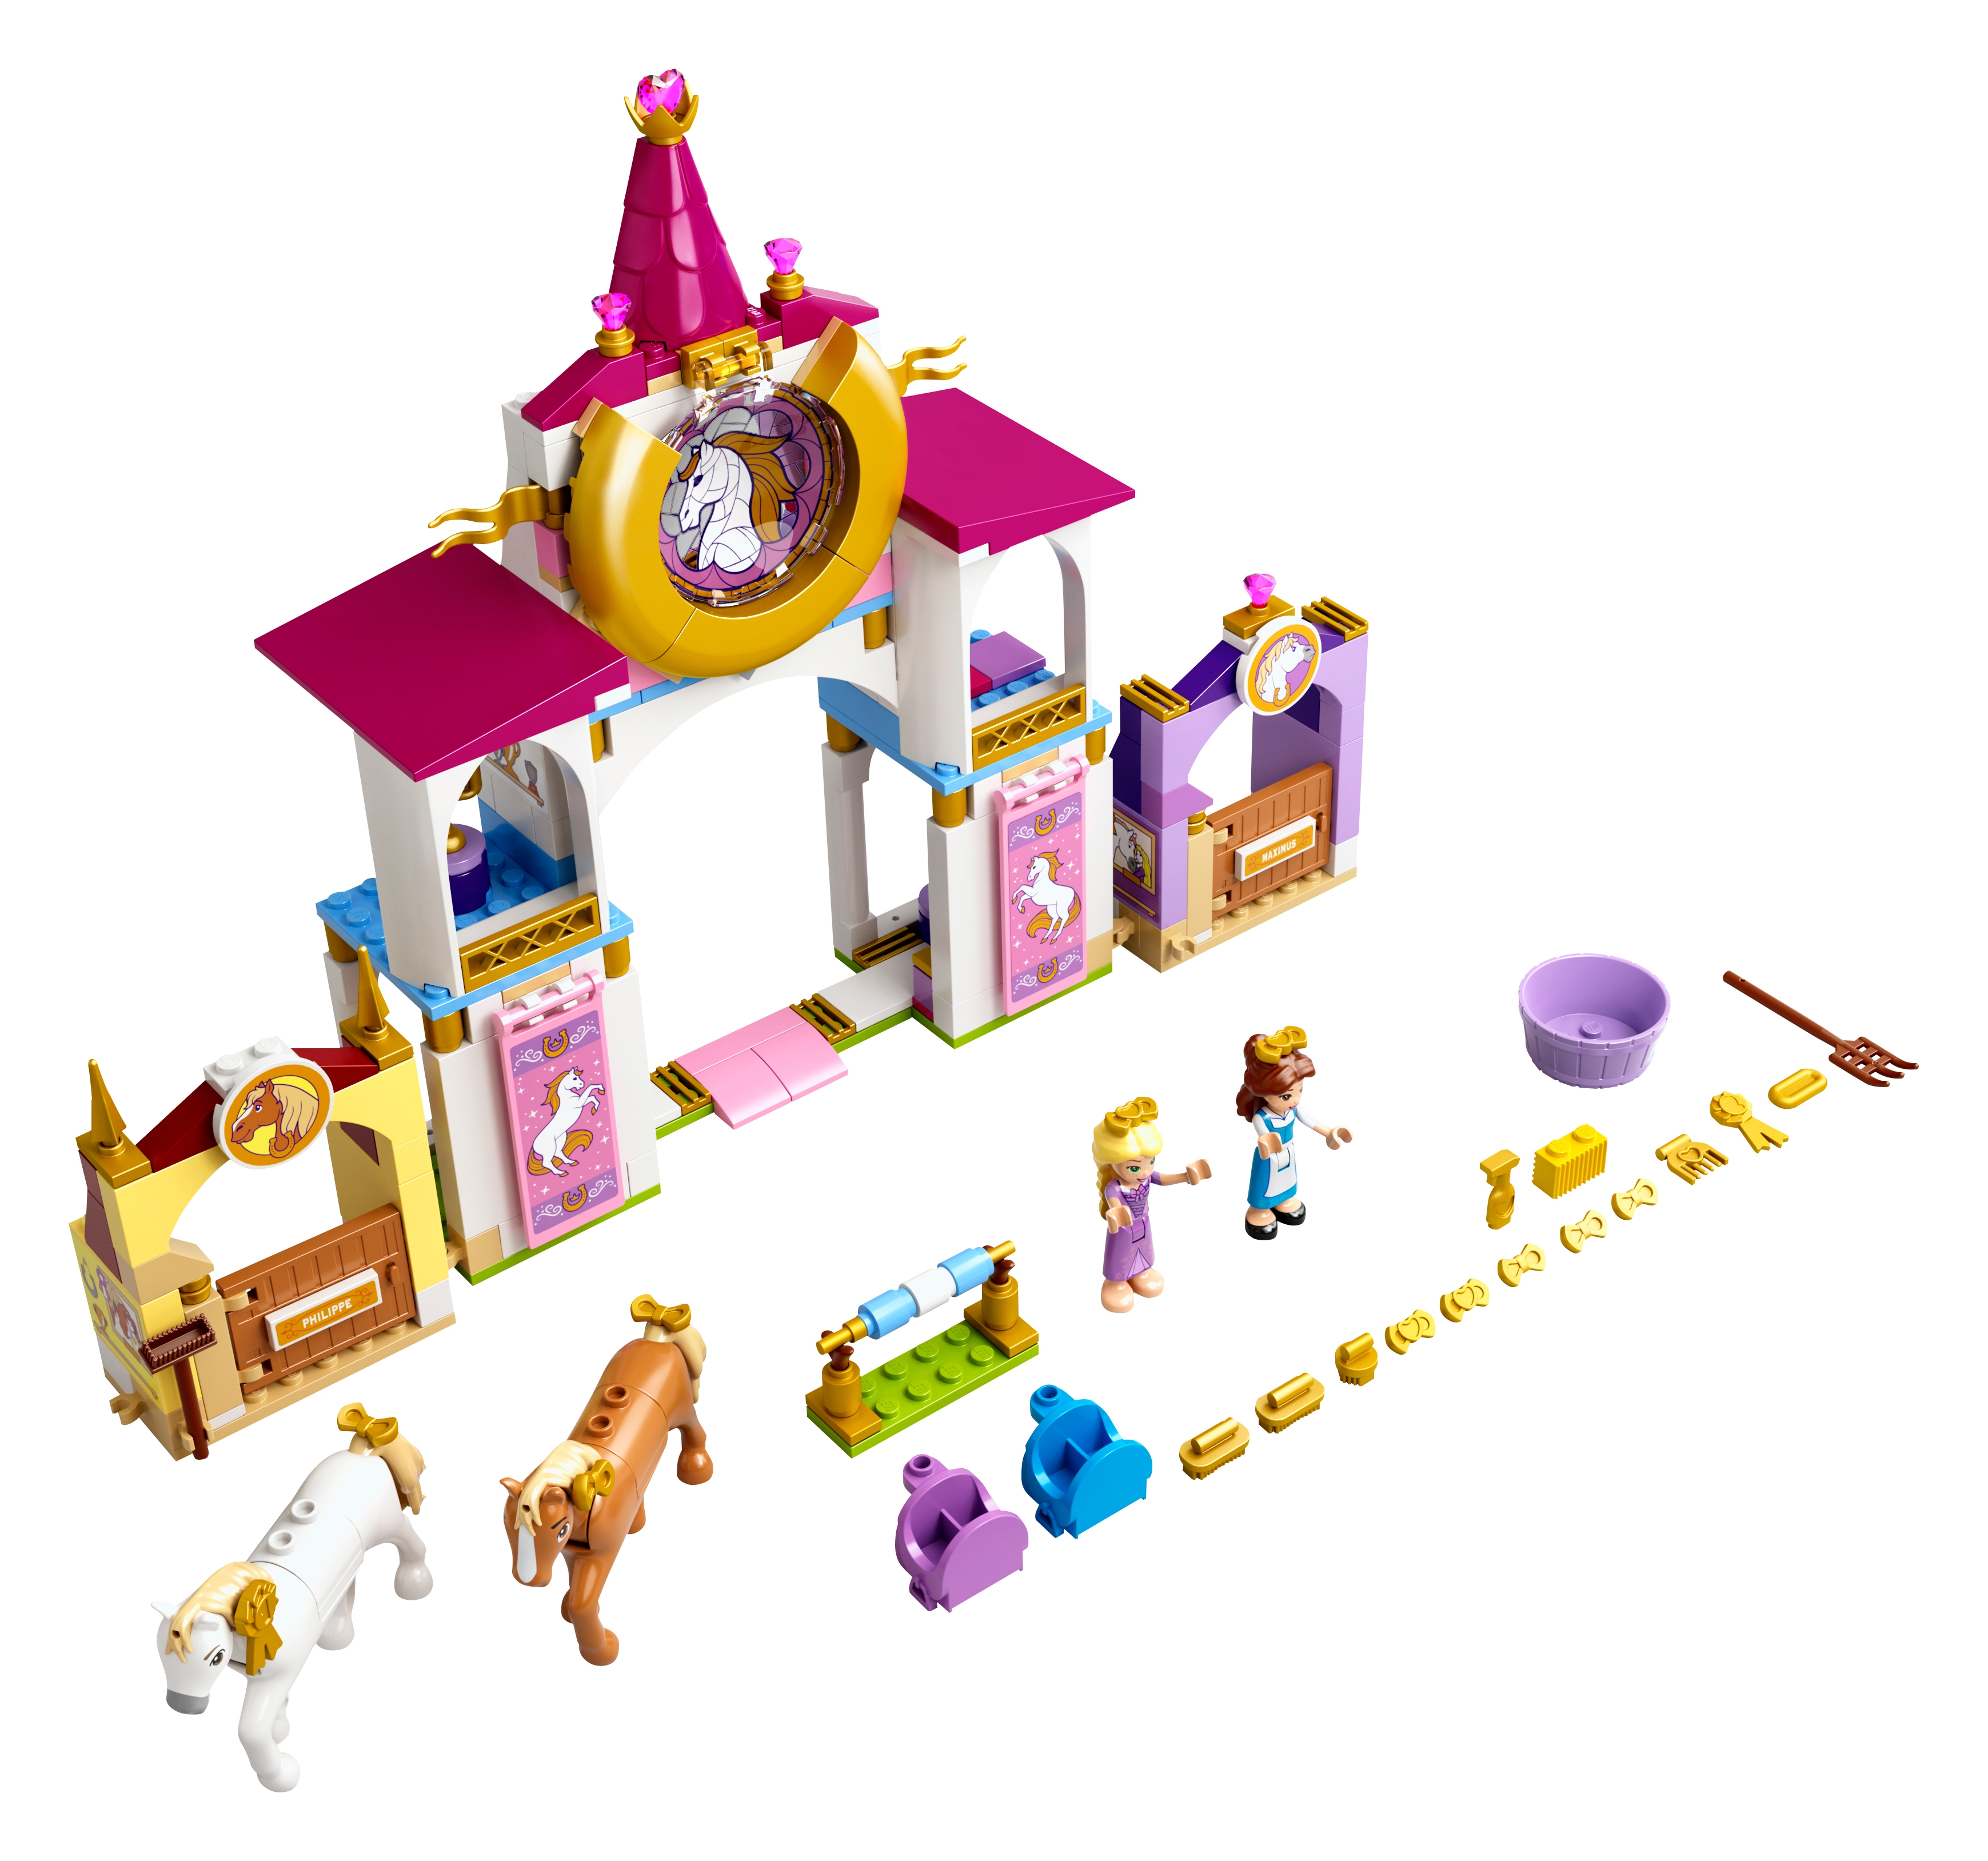 43195-1: Belles und Rapunzels königliche Ställe | Shopping-Assistent |  Brickbank APP